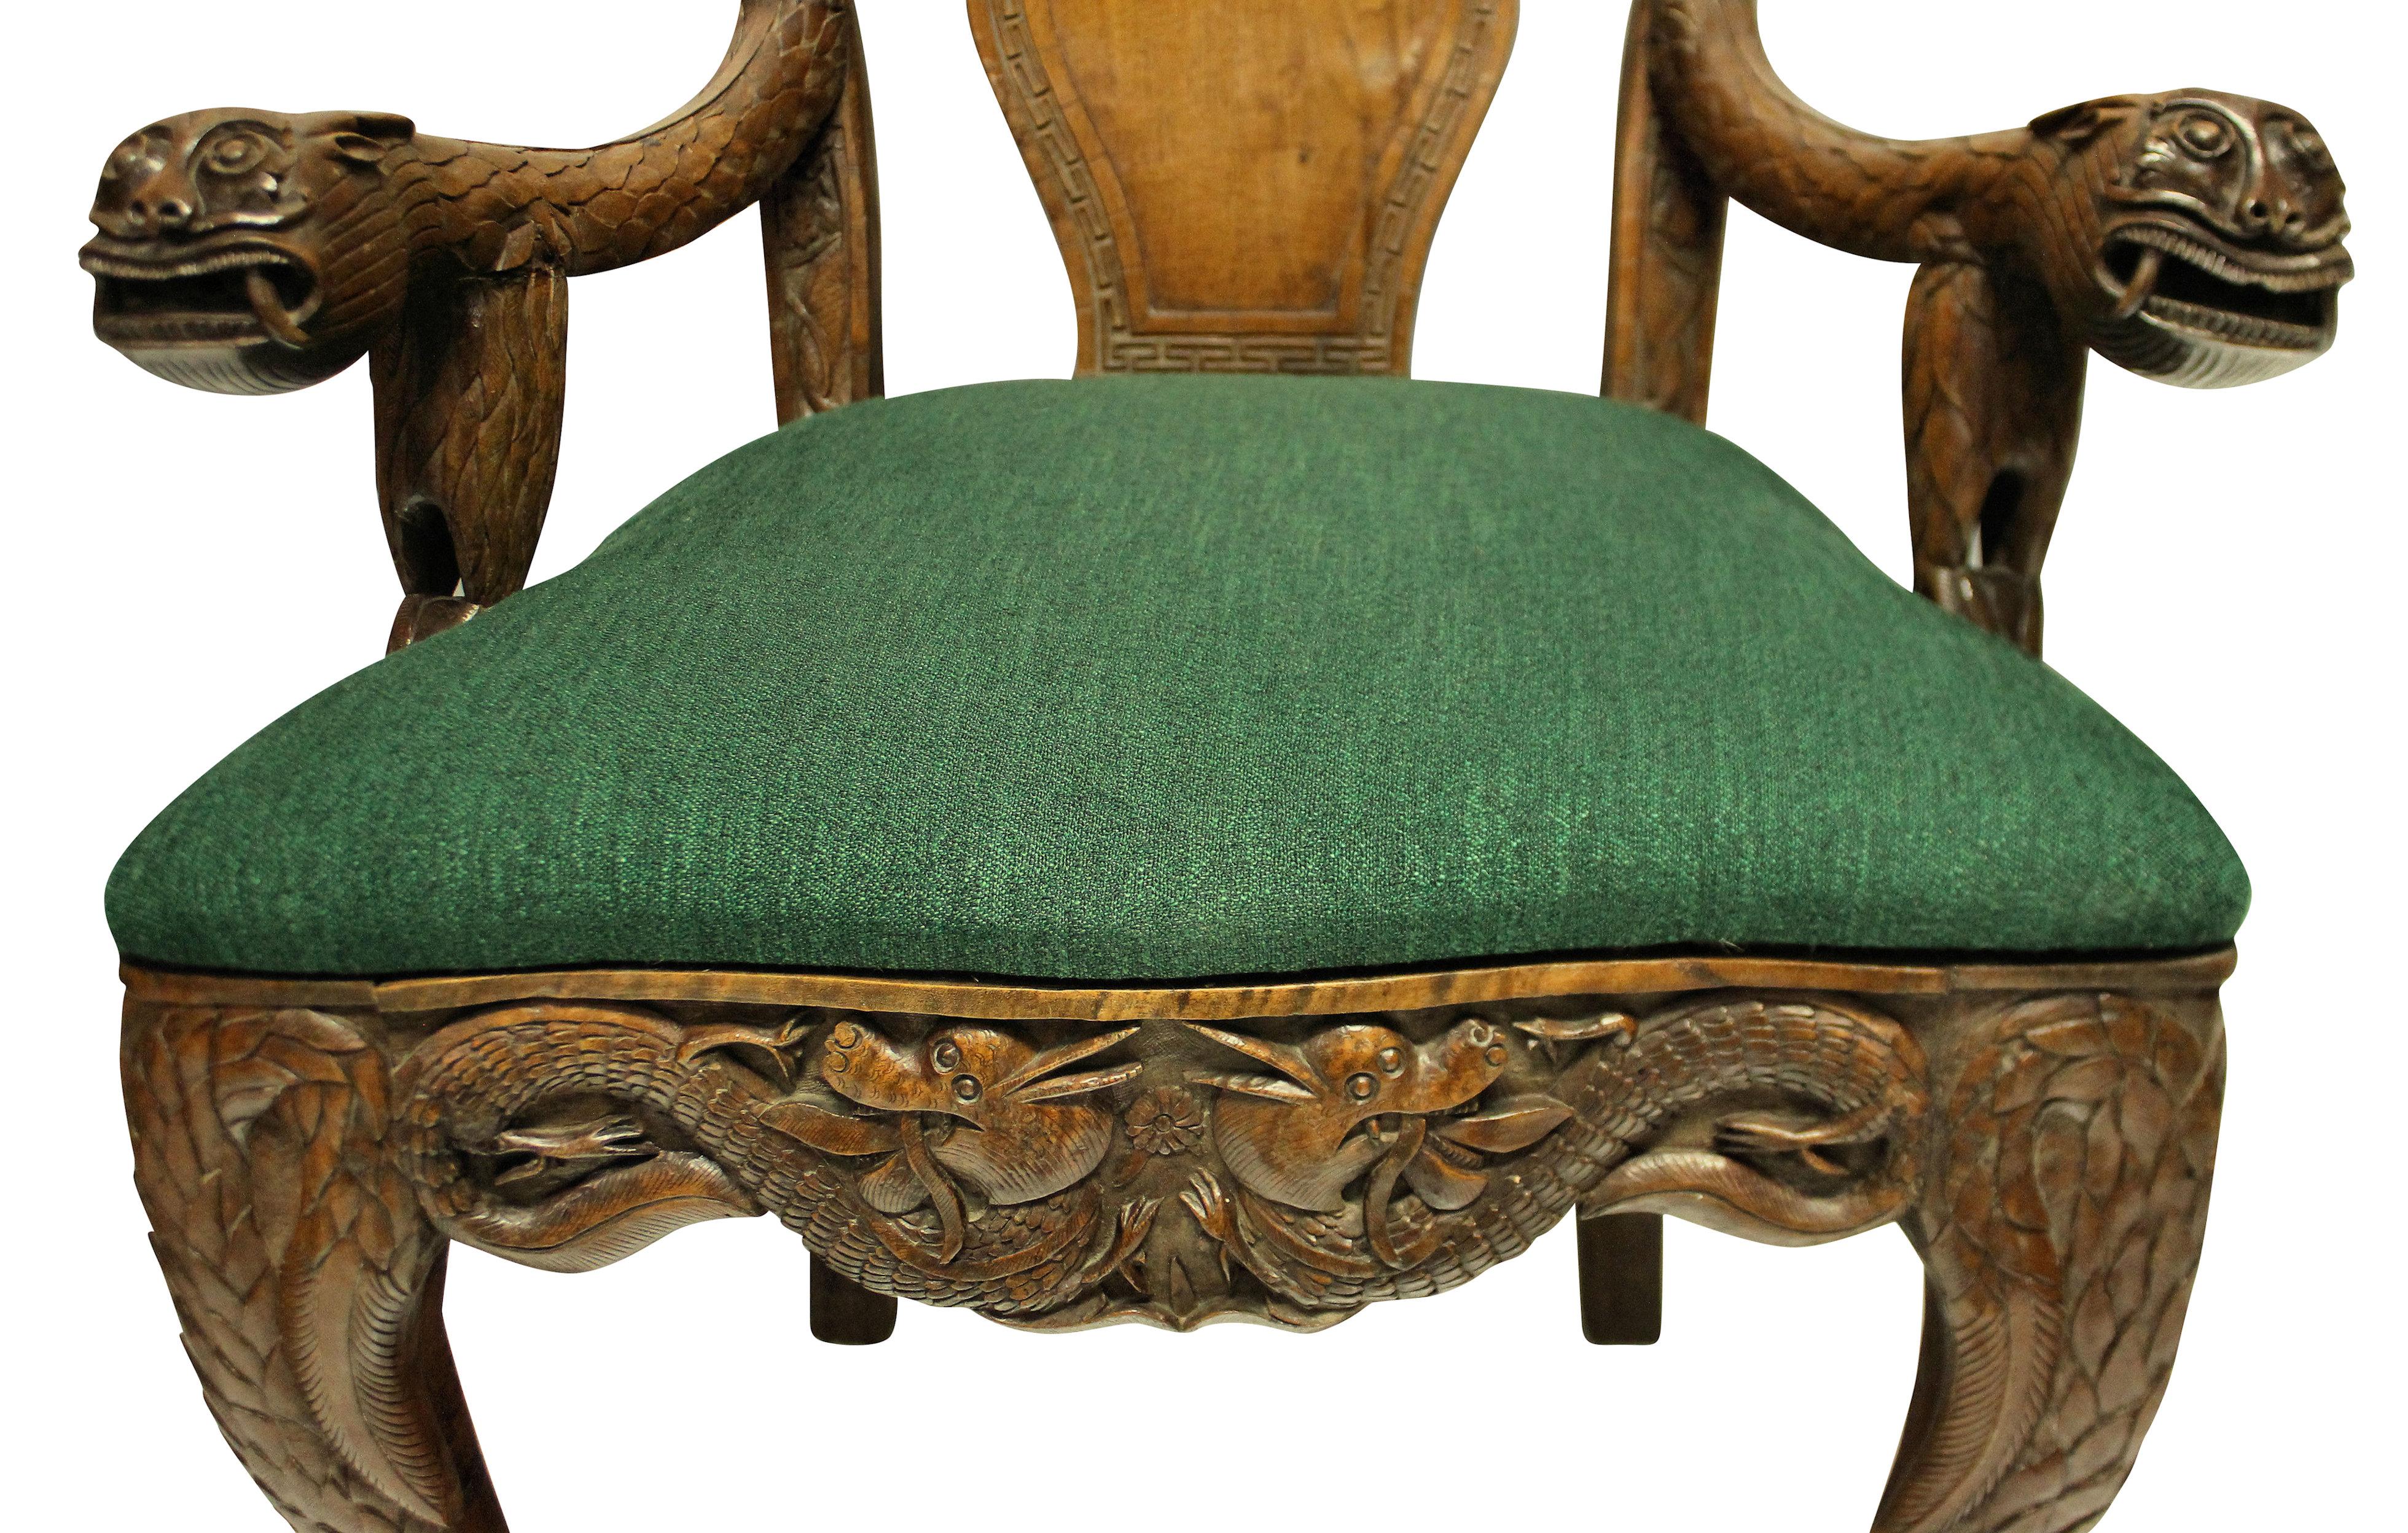 Ein Paar fein geschnitzte, sehr dekorative chinesische Sessel aus massivem Teakholz. Die Stühle sind voller Symbolik und Bedeutung, mit Löwen, Drachen, Fledermäusen, Lotosblumen und Symbolen. Mit neu gepolsterten Sitzen in Smaragdgrün.